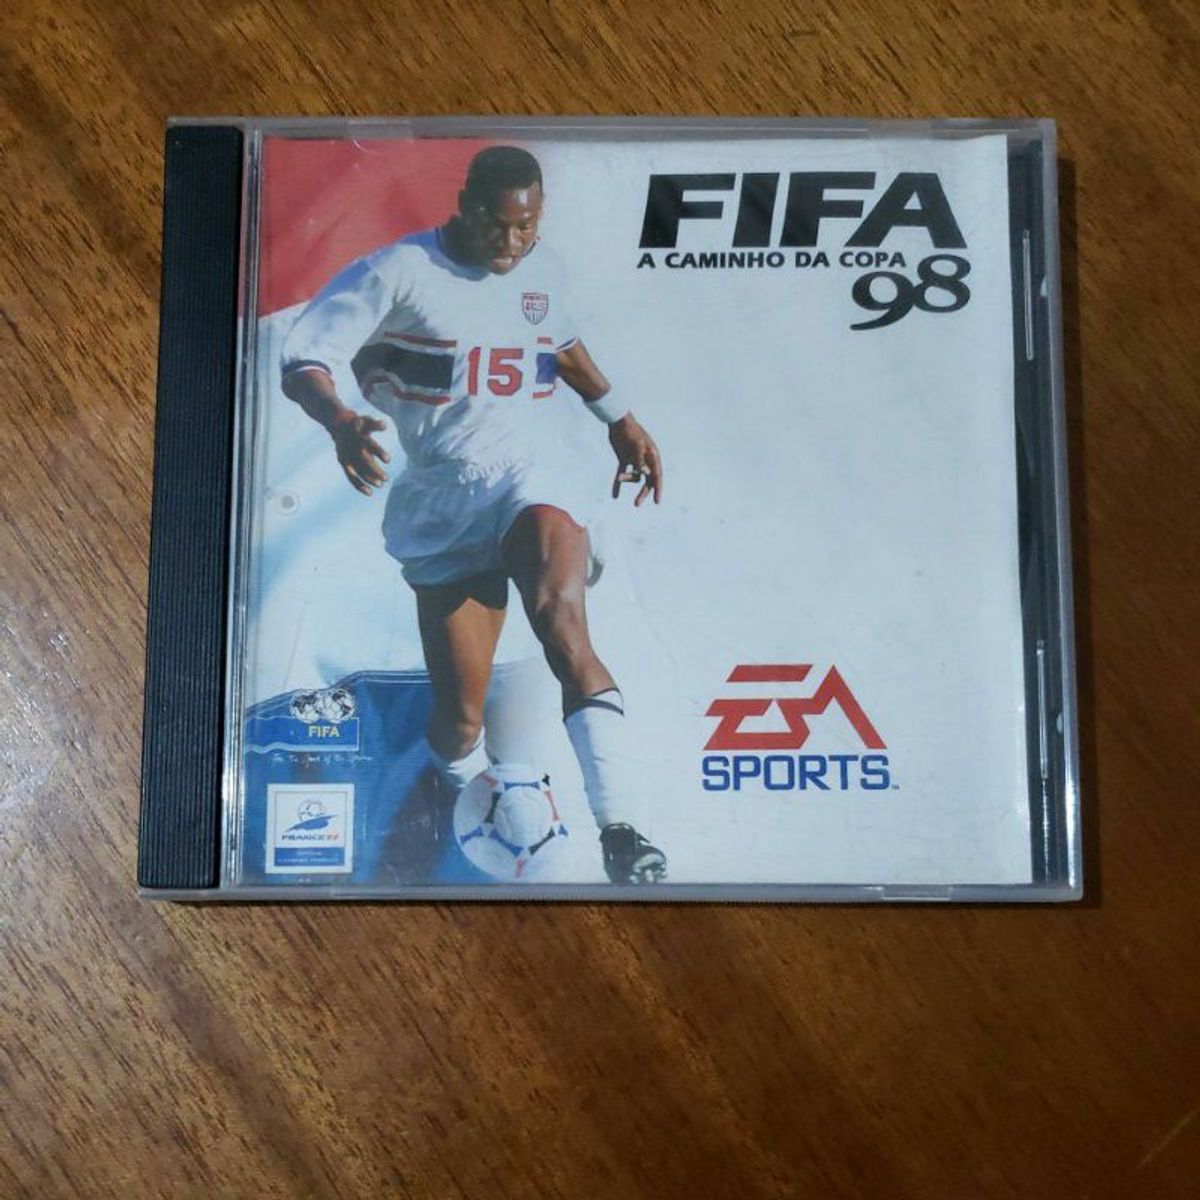 FIFA 15 jogo original pc dvd completo key usada - Desconto no Preço